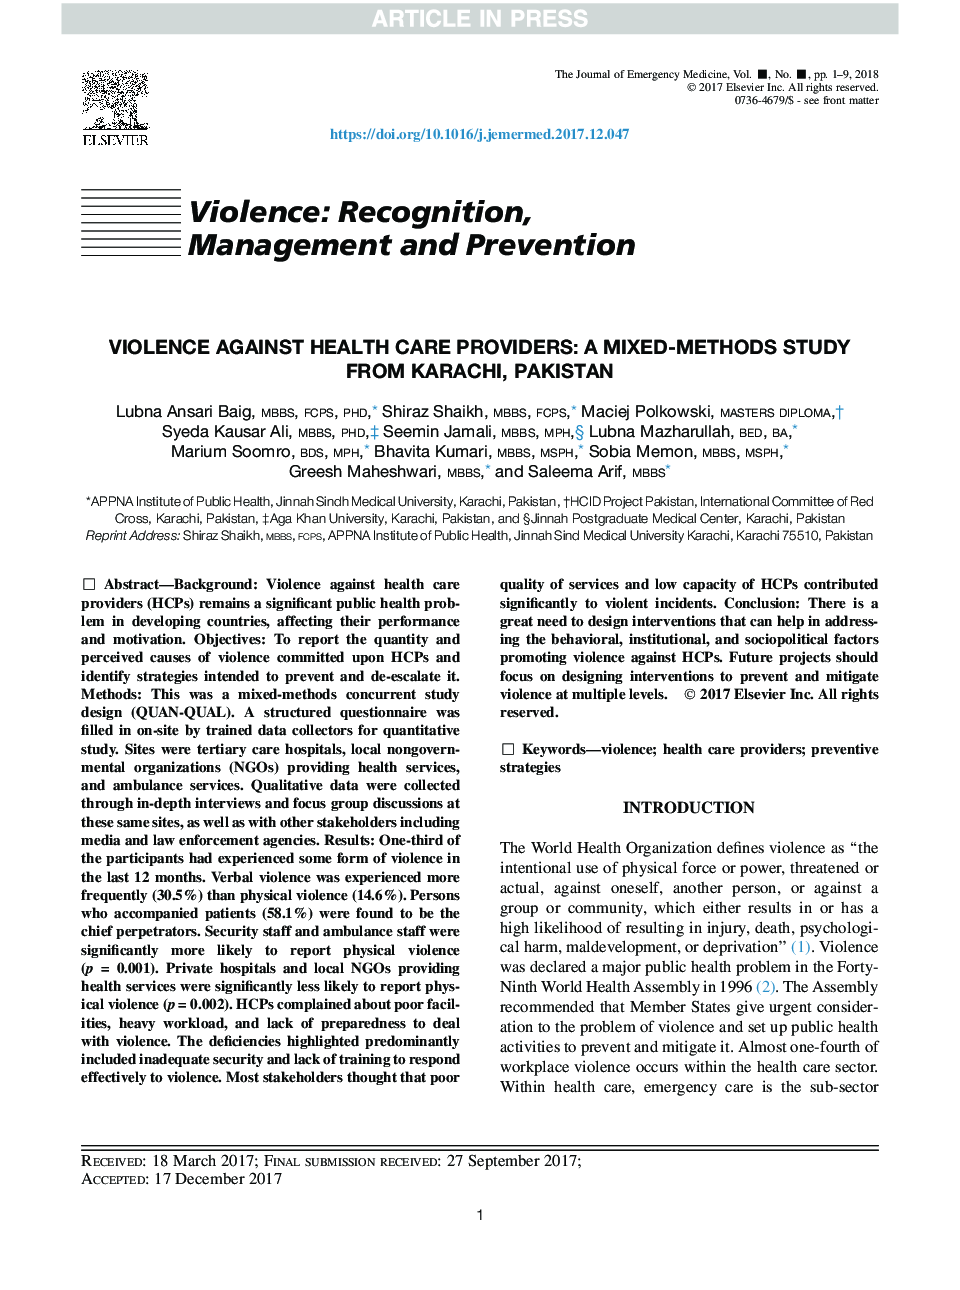 خشونت علیه ارائه دهندگان مراقبت های بهداشتی: مطالعه ی ترکیبی از کراچی در پاکستان 